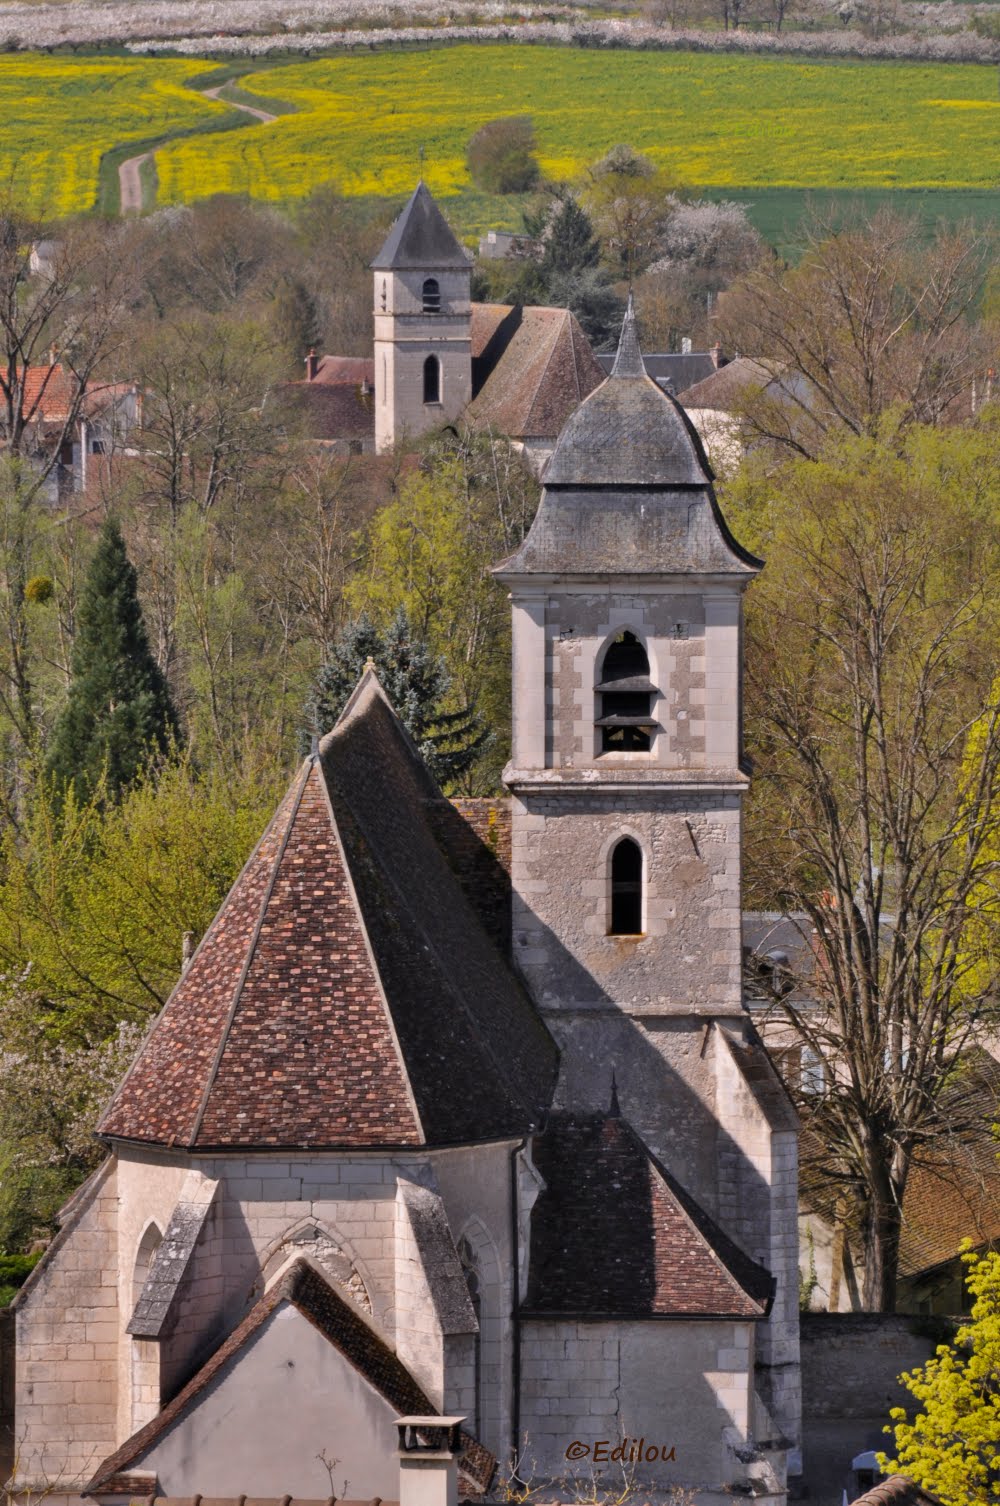 LES DEUX éGLISES, the two churches, две церкви